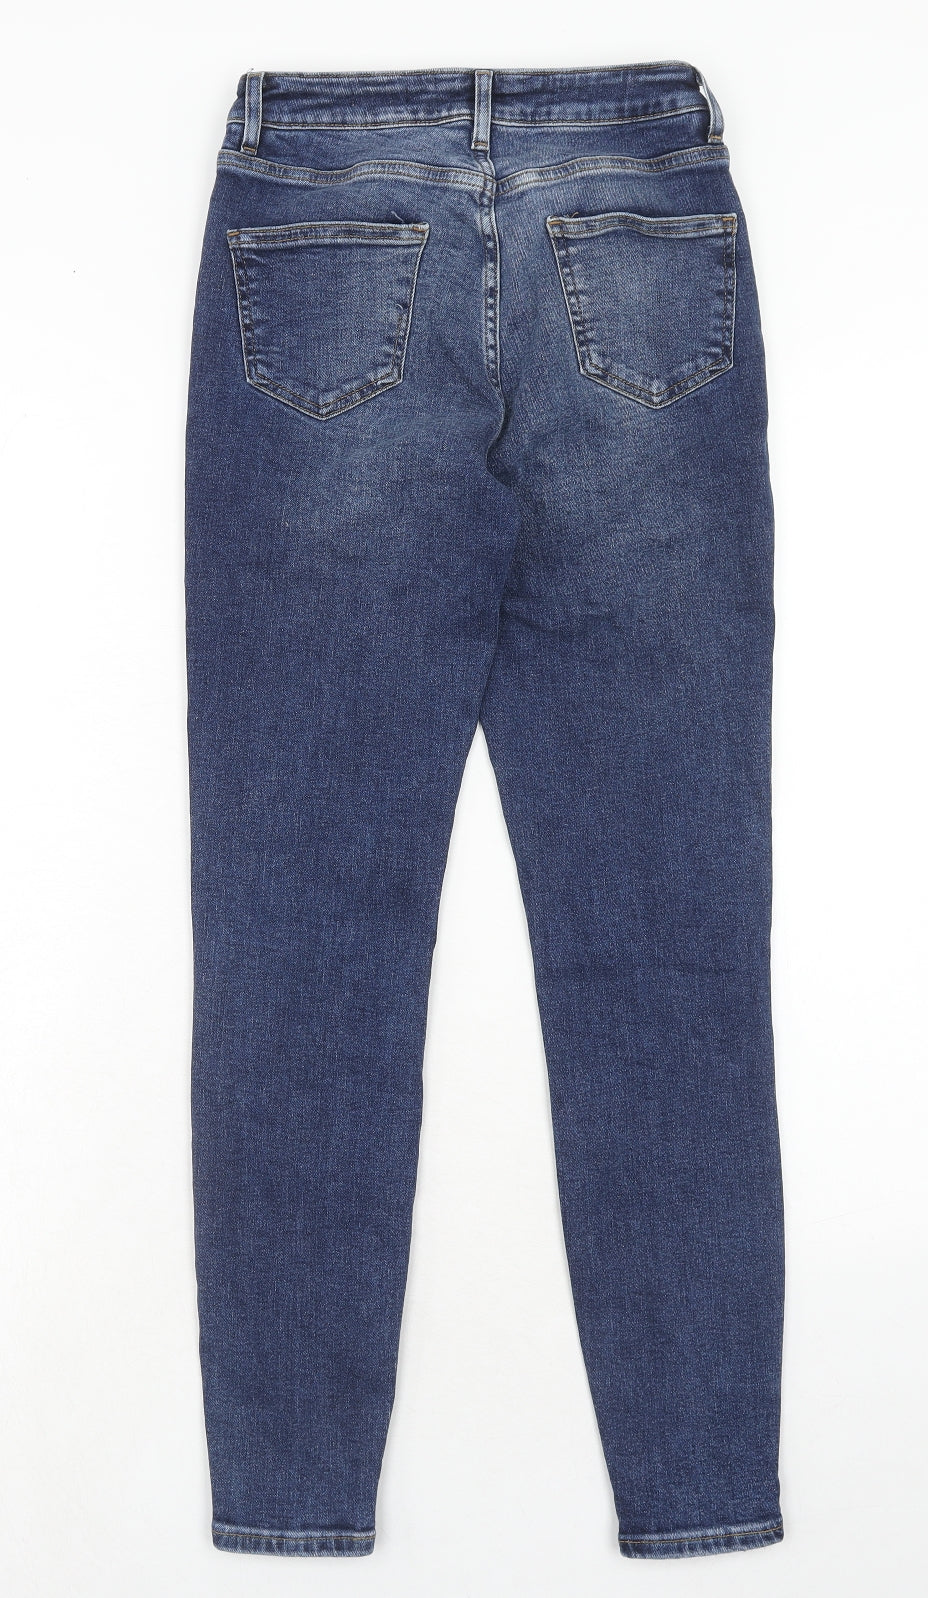 New Look Womens Blue Cotton Skinny Jeans Size 8 Regular Zip - Side Stripe Detail